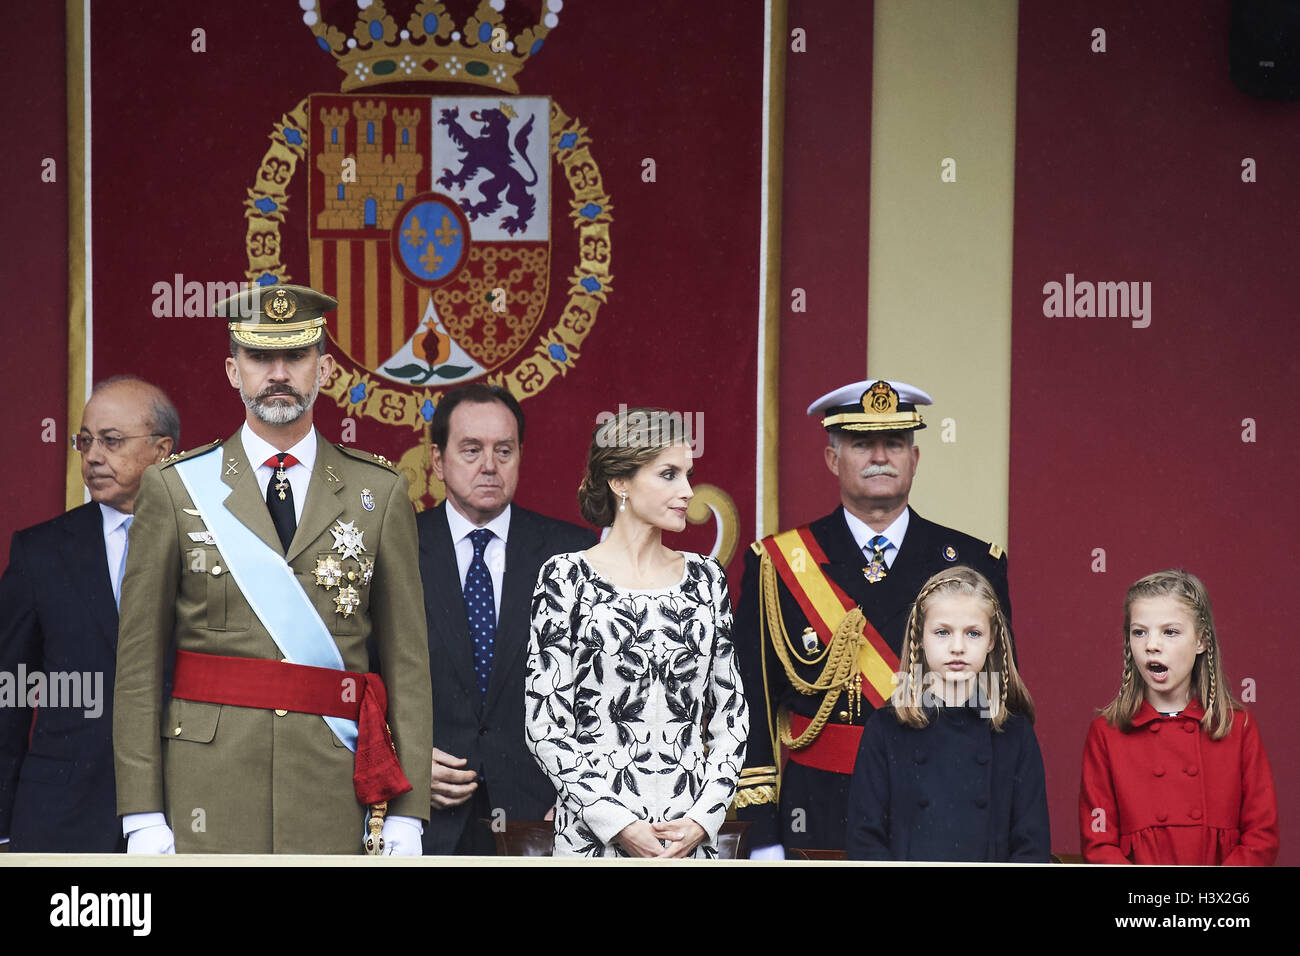 Madrid, Madrid, Espagne. 12 octobre 2016. Princesse Sofia a assisté à la parade militaire de la fête nationale le 12 octobre 2016 à Madrid, Espagne. Crédit : Jack Abuin/ZUMA/Alamy Fil Live News Banque D'Images